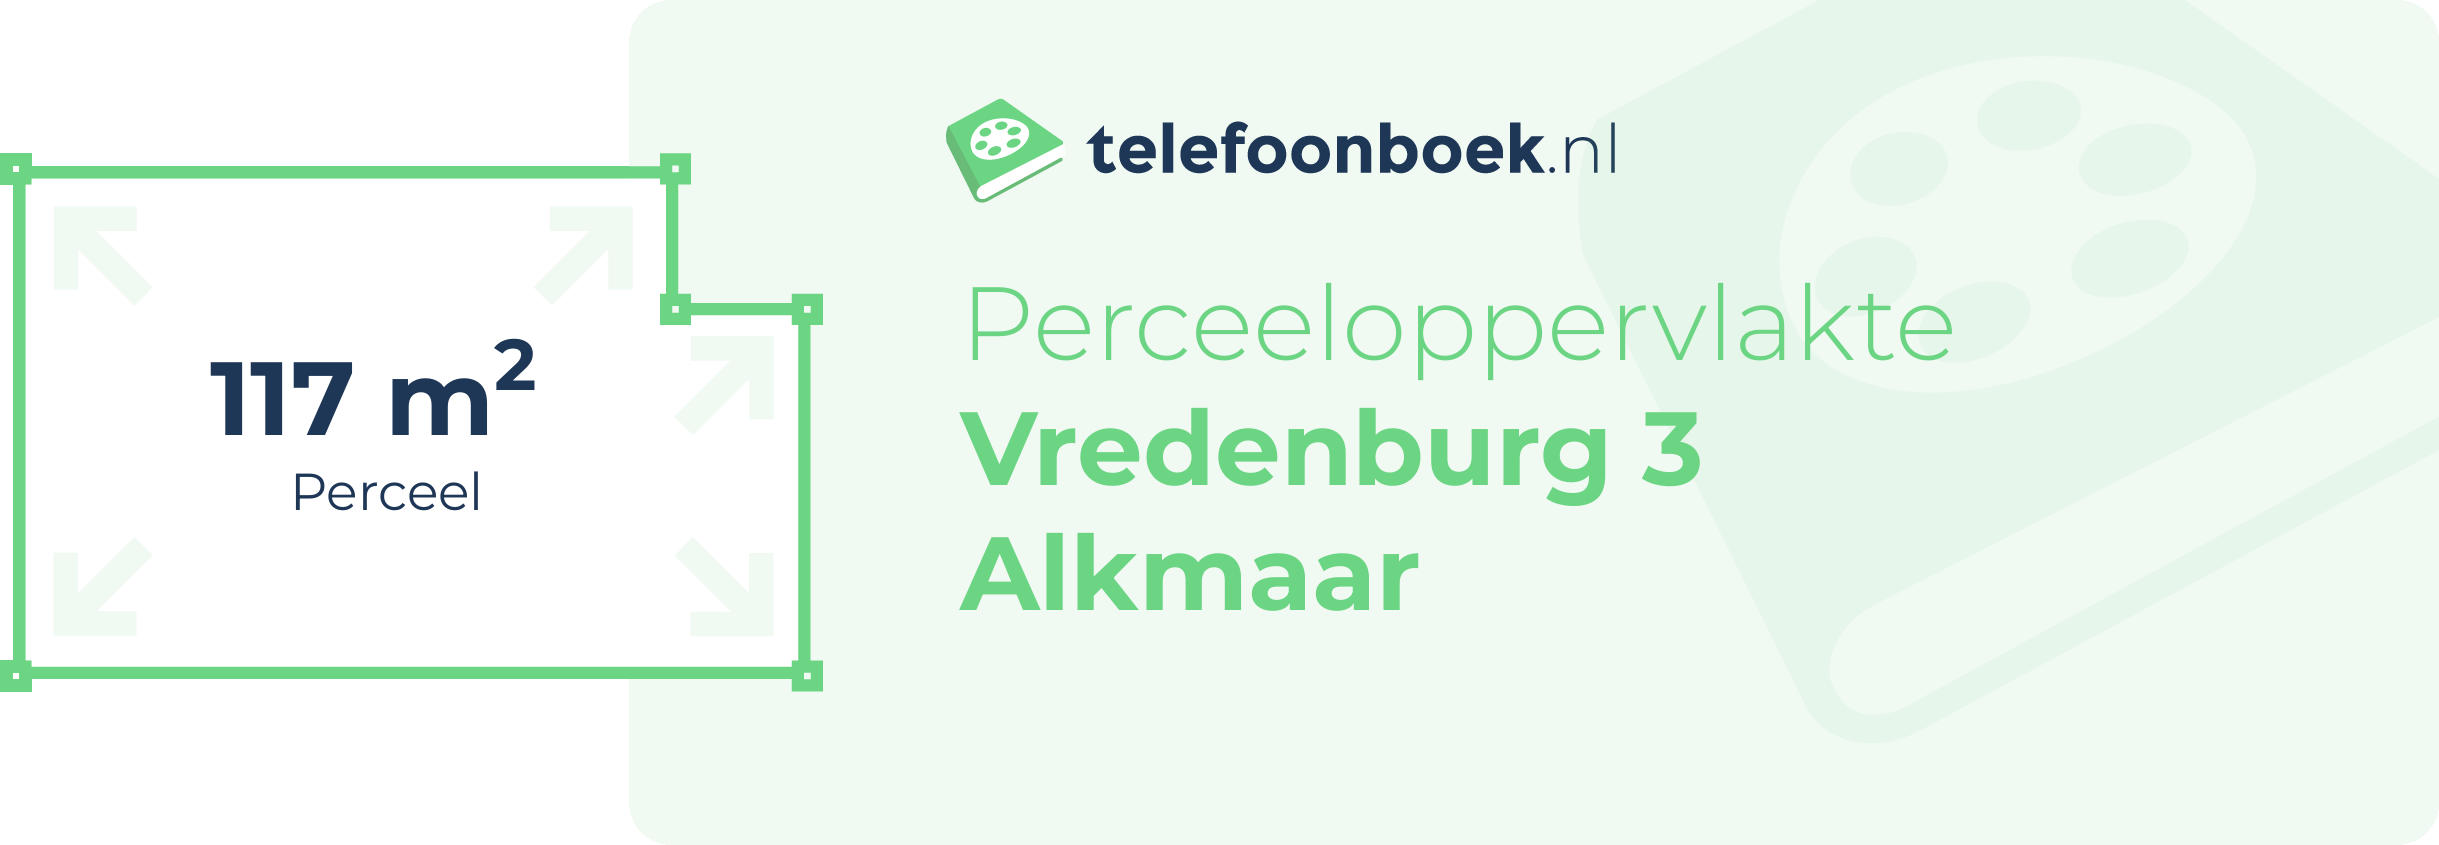 Perceeloppervlakte Vredenburg 3 Alkmaar